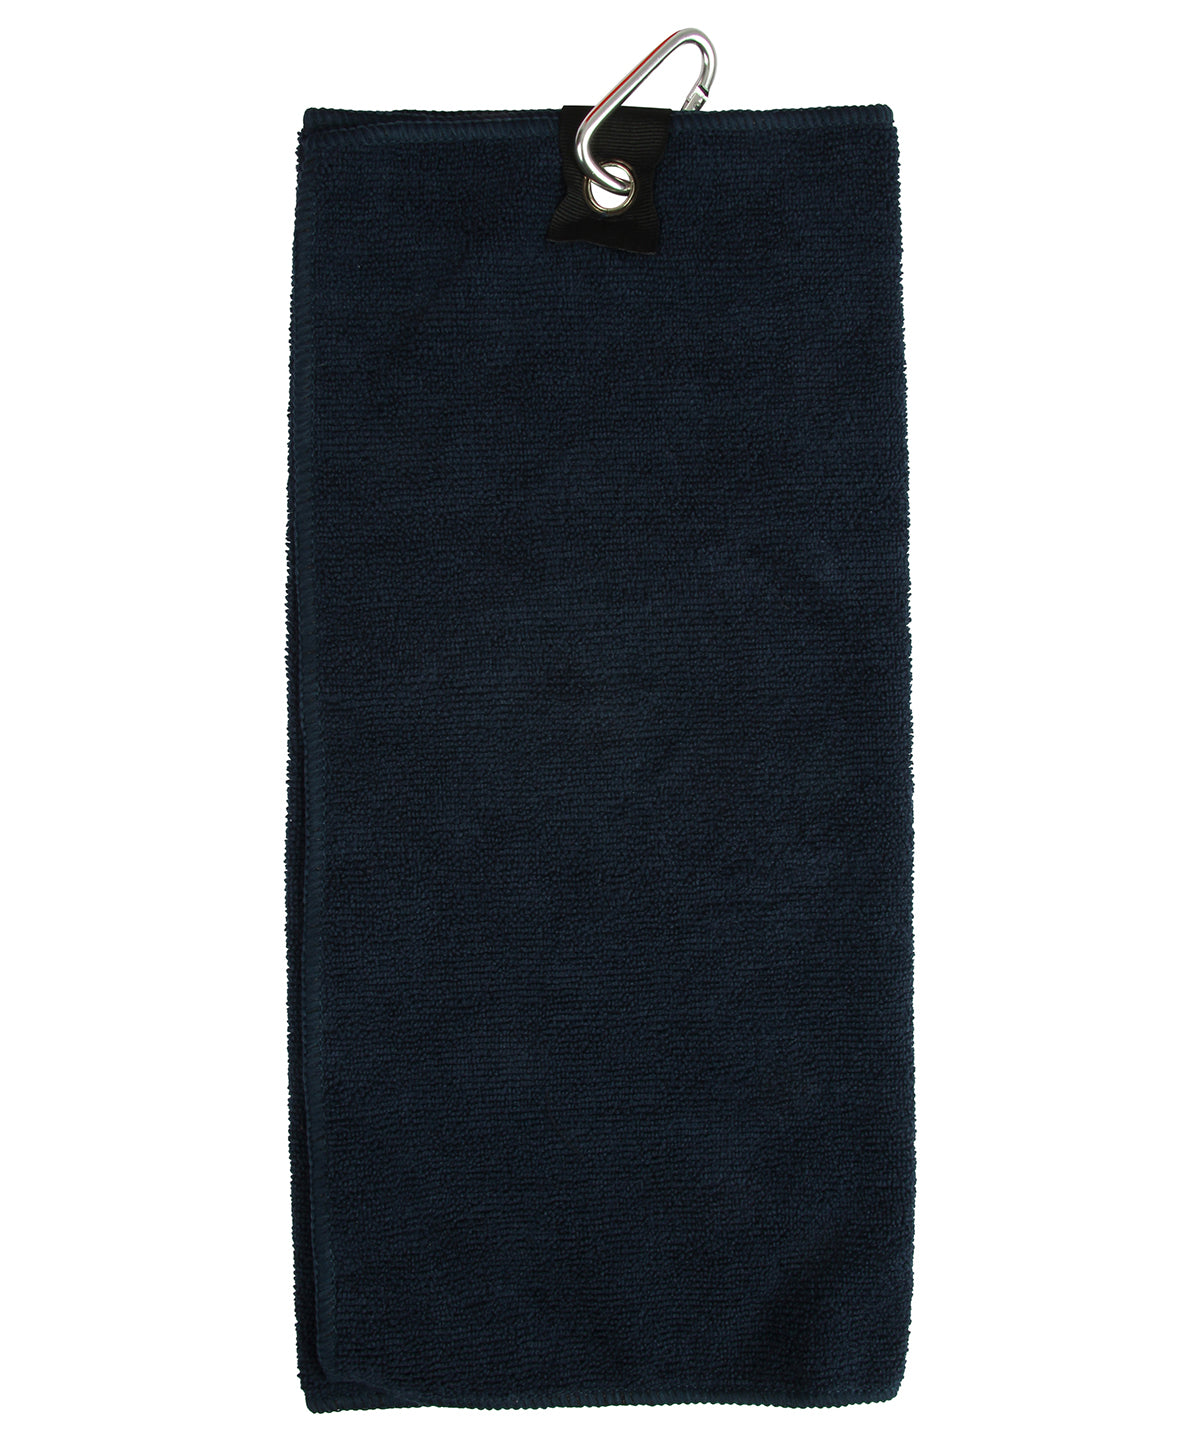 Microfibre golf towel